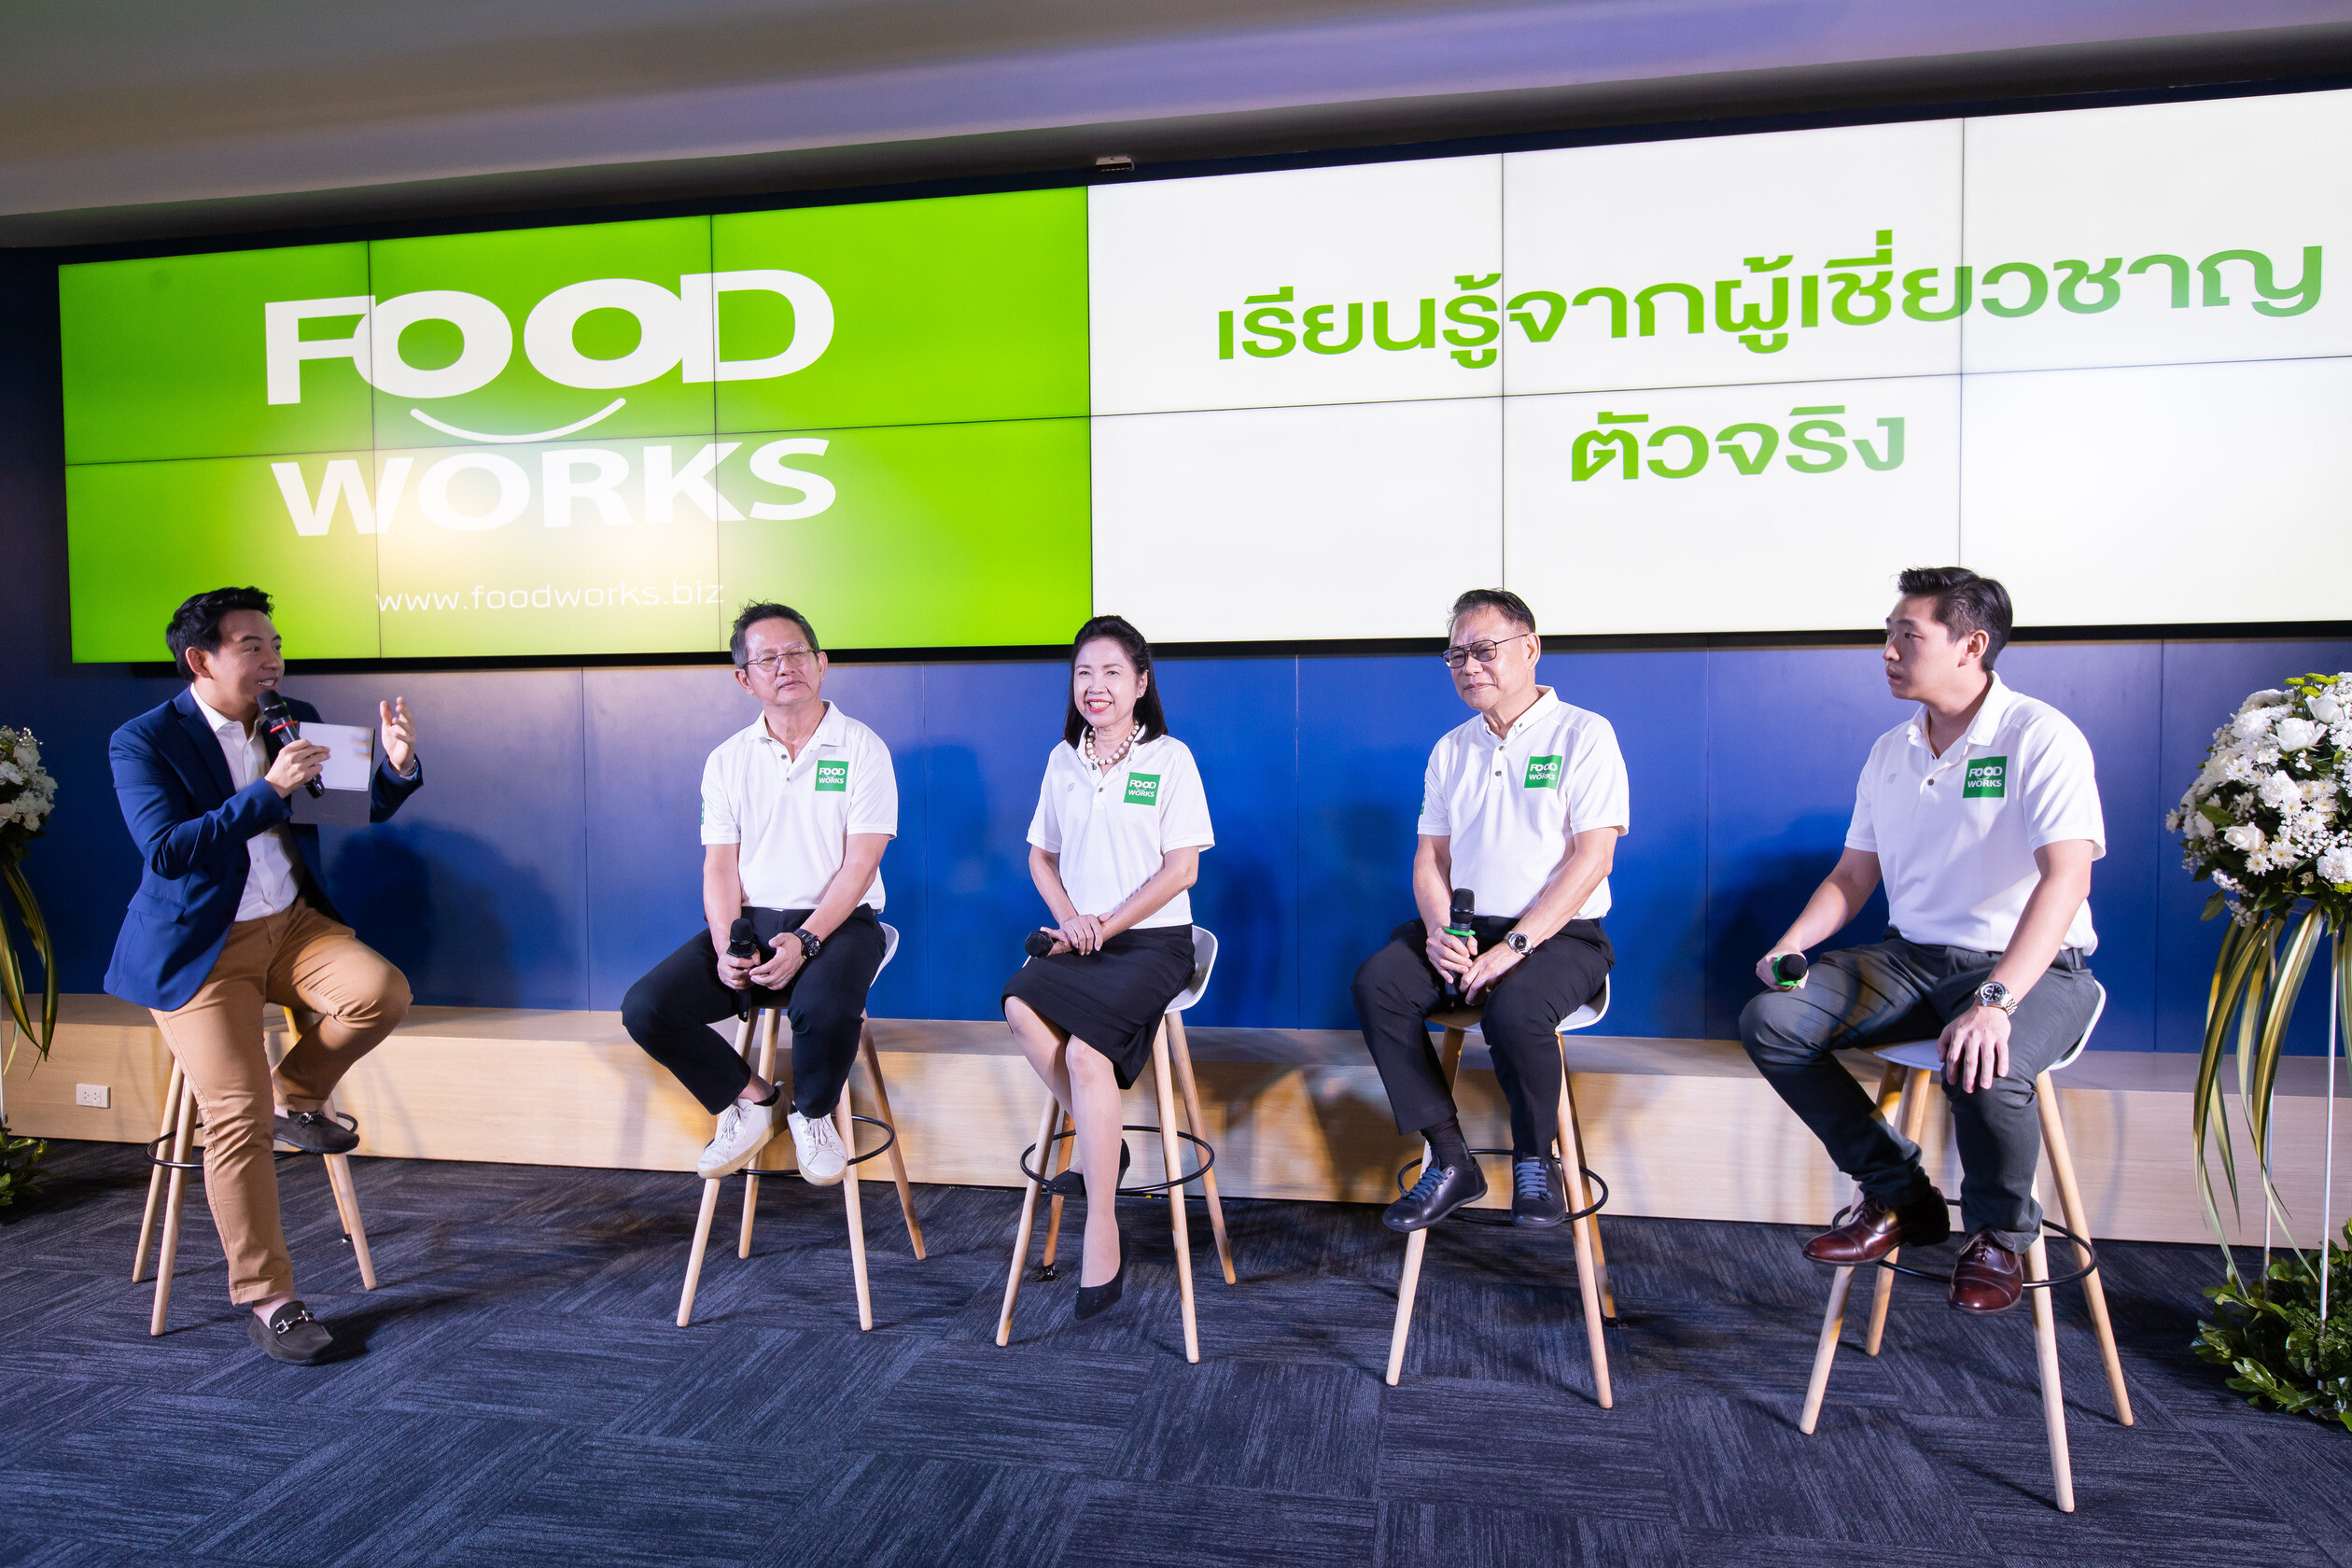 ม.หอการค้าไทย จับมือ อำพลฟูดส์ เปิดหลักสูตร FoodWorks ทางลัดสู่ความสำเร็จยกระดับ SMEs ด้านอุตสาหกรรมอาหารที่พร้อมเติบโต